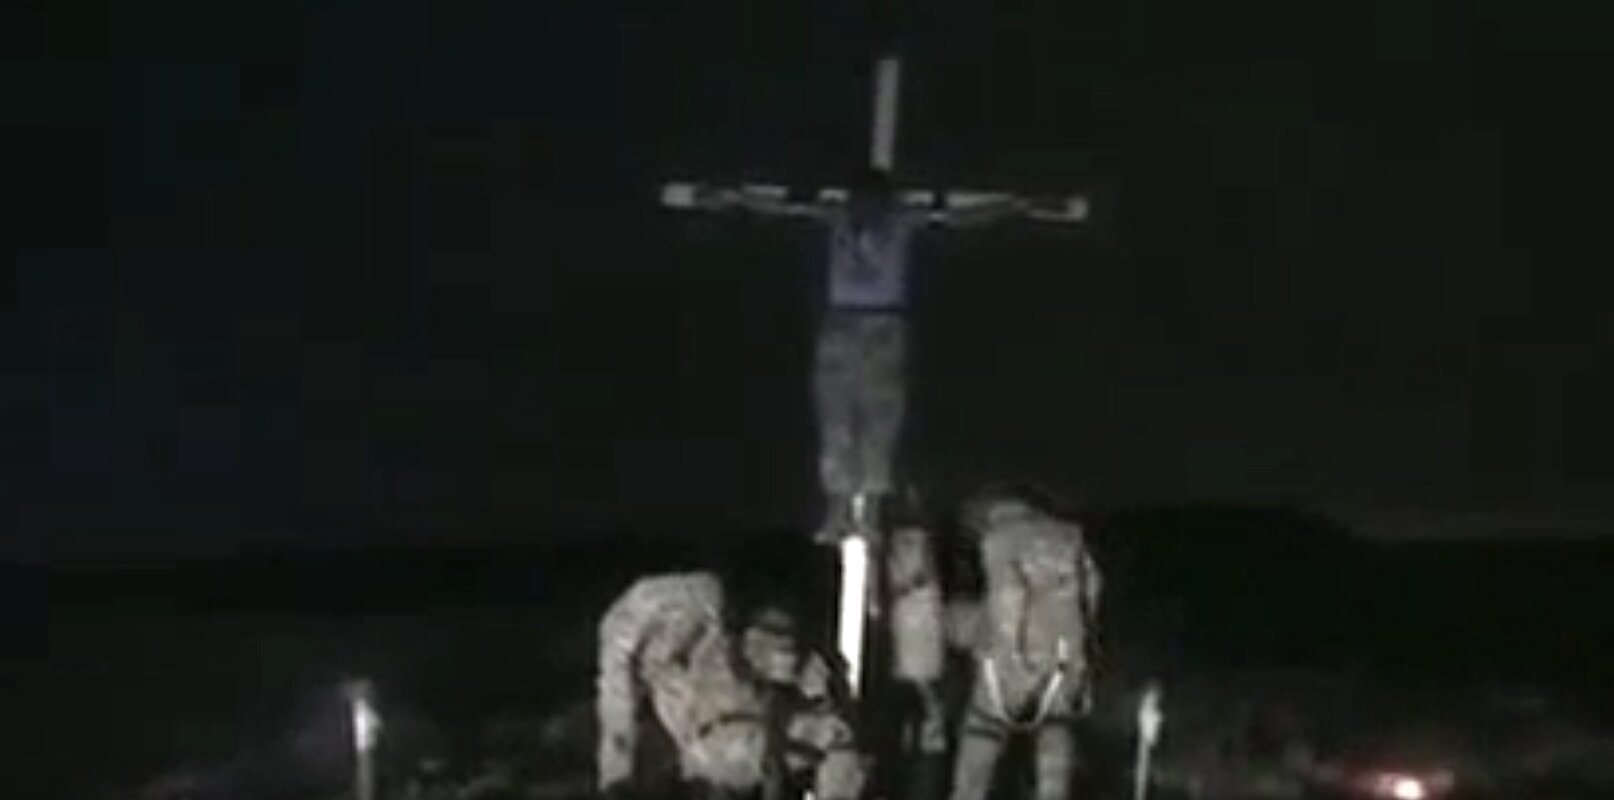 ΔΕΙΤΕ τι ΆΛΛΟ σας κρύβουν τα δυτικά ΜΜΕ για την Ουκρανία: Σταυρώνουν Χριστιανό σε ΖΩΝΤΑΝΗ ΜΕΤΑΔΟΣΗ και τον καίνε…!!!